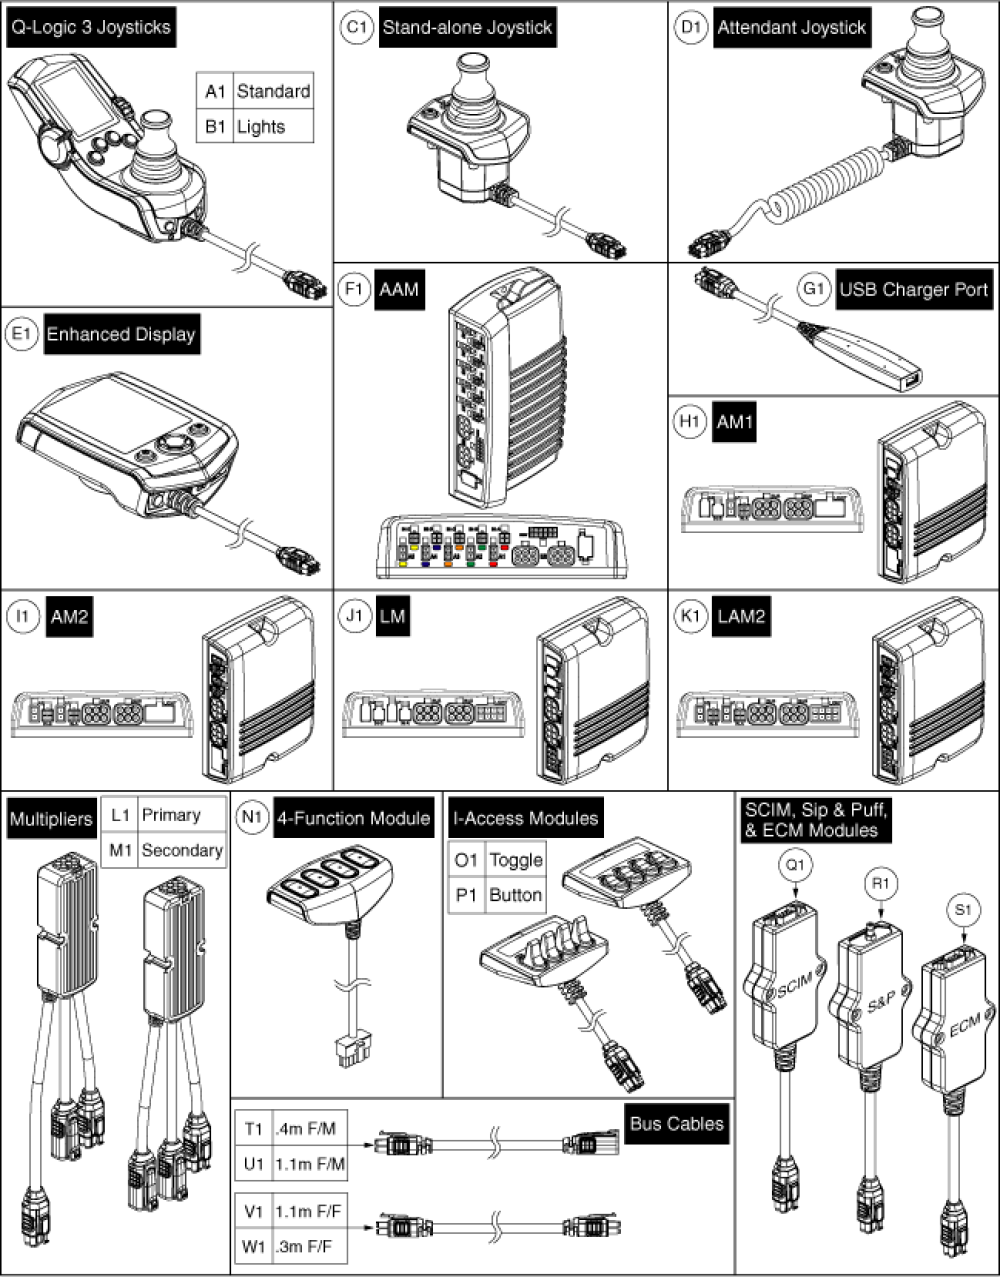 Q-logic 3 Joysticks & Modules parts diagram